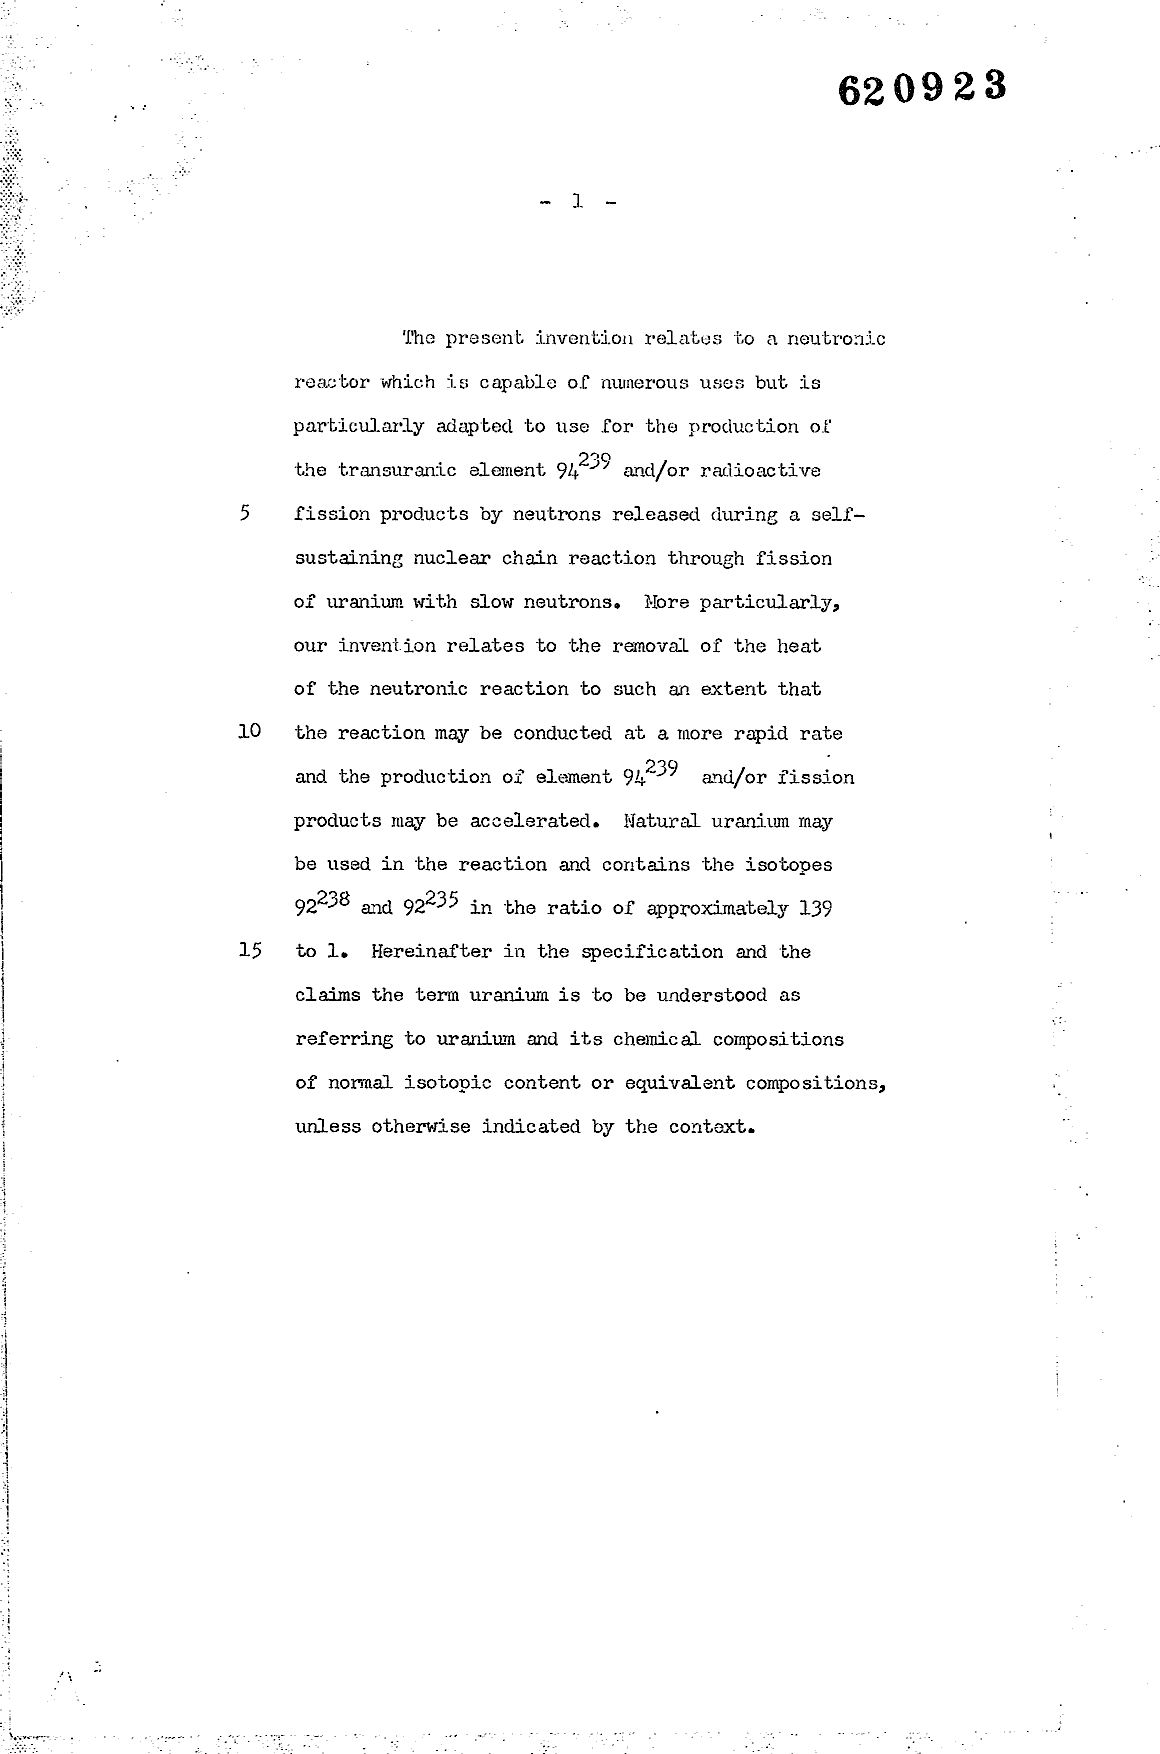 Canadian Patent Document 620923. Description 19941217. Image 1 of 51